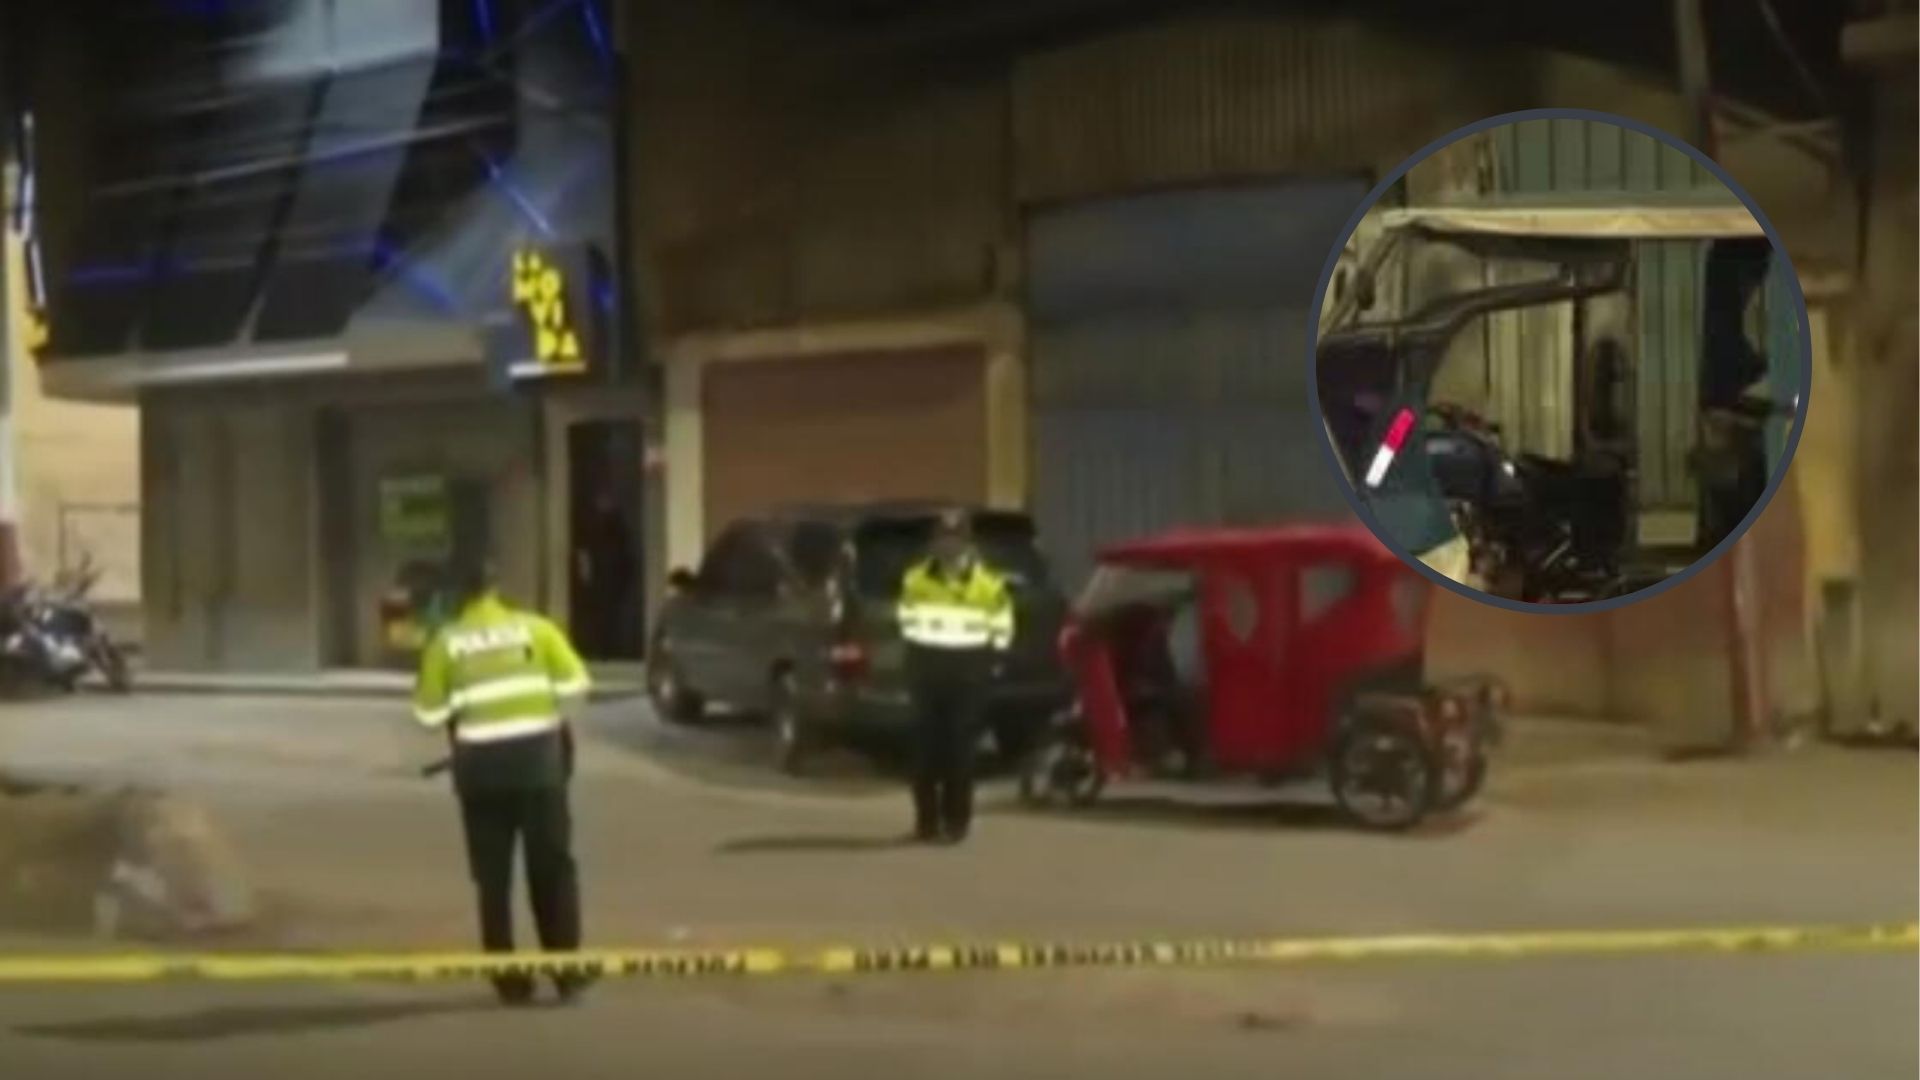 Puente Piedra: Explosión de granada en discoteca deja 3 heridos